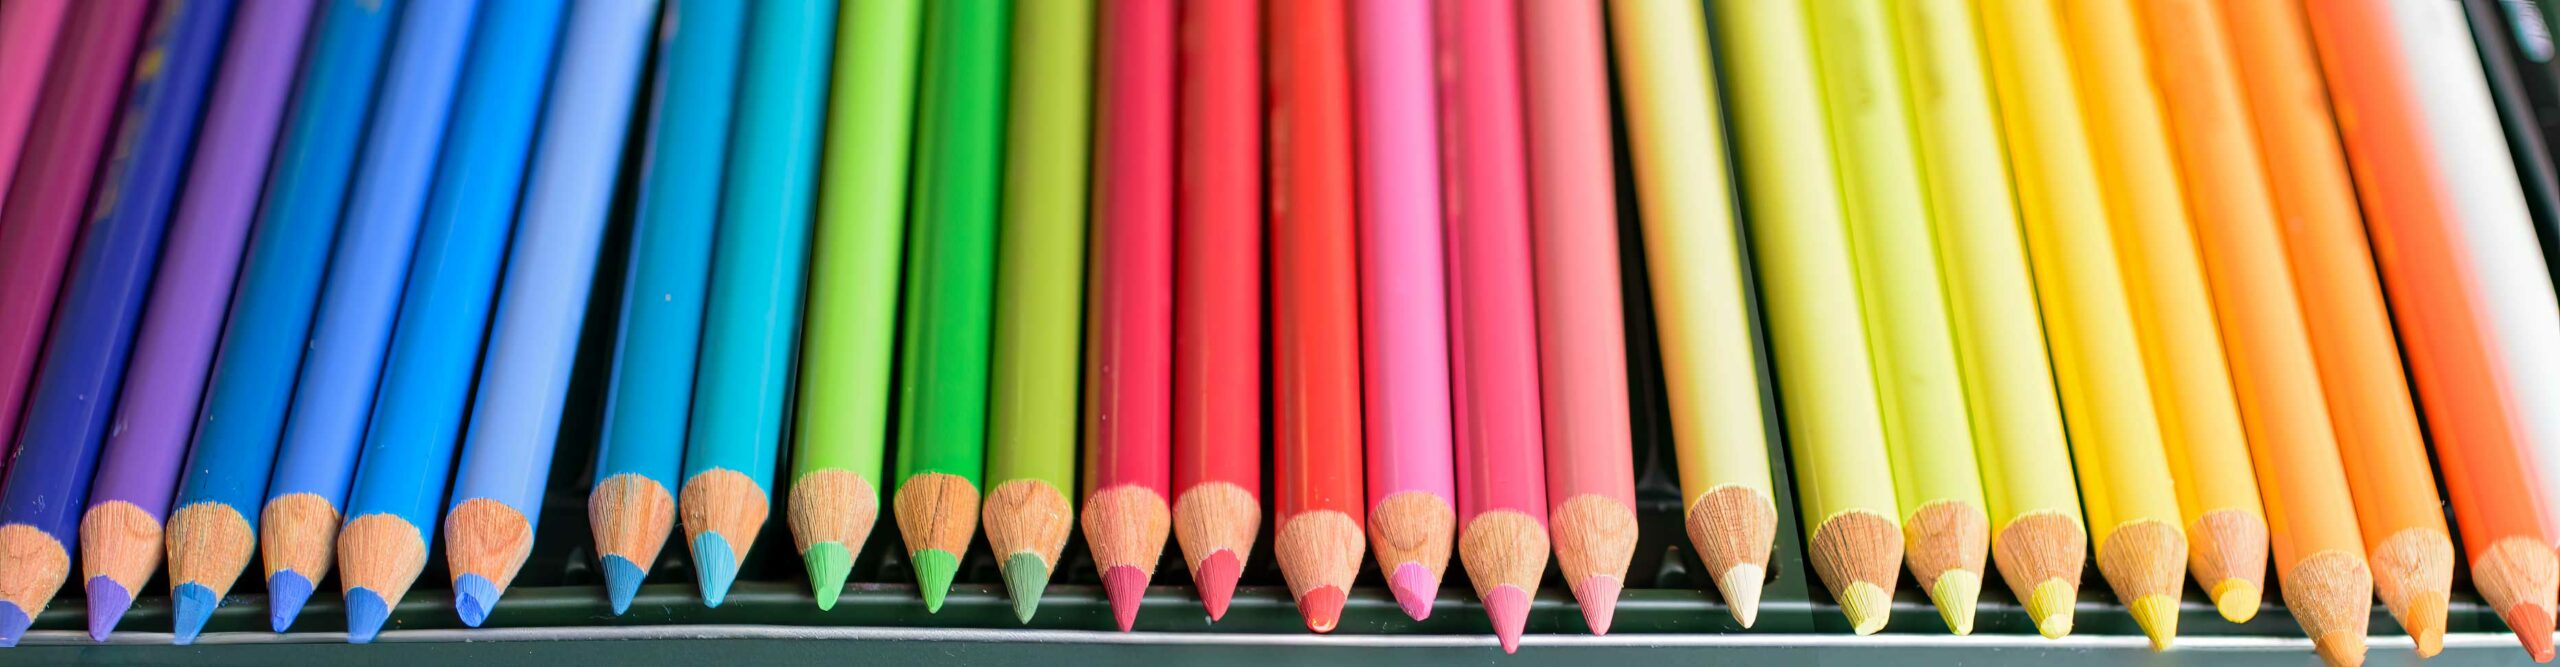 Kunst blyanter i flotte farver